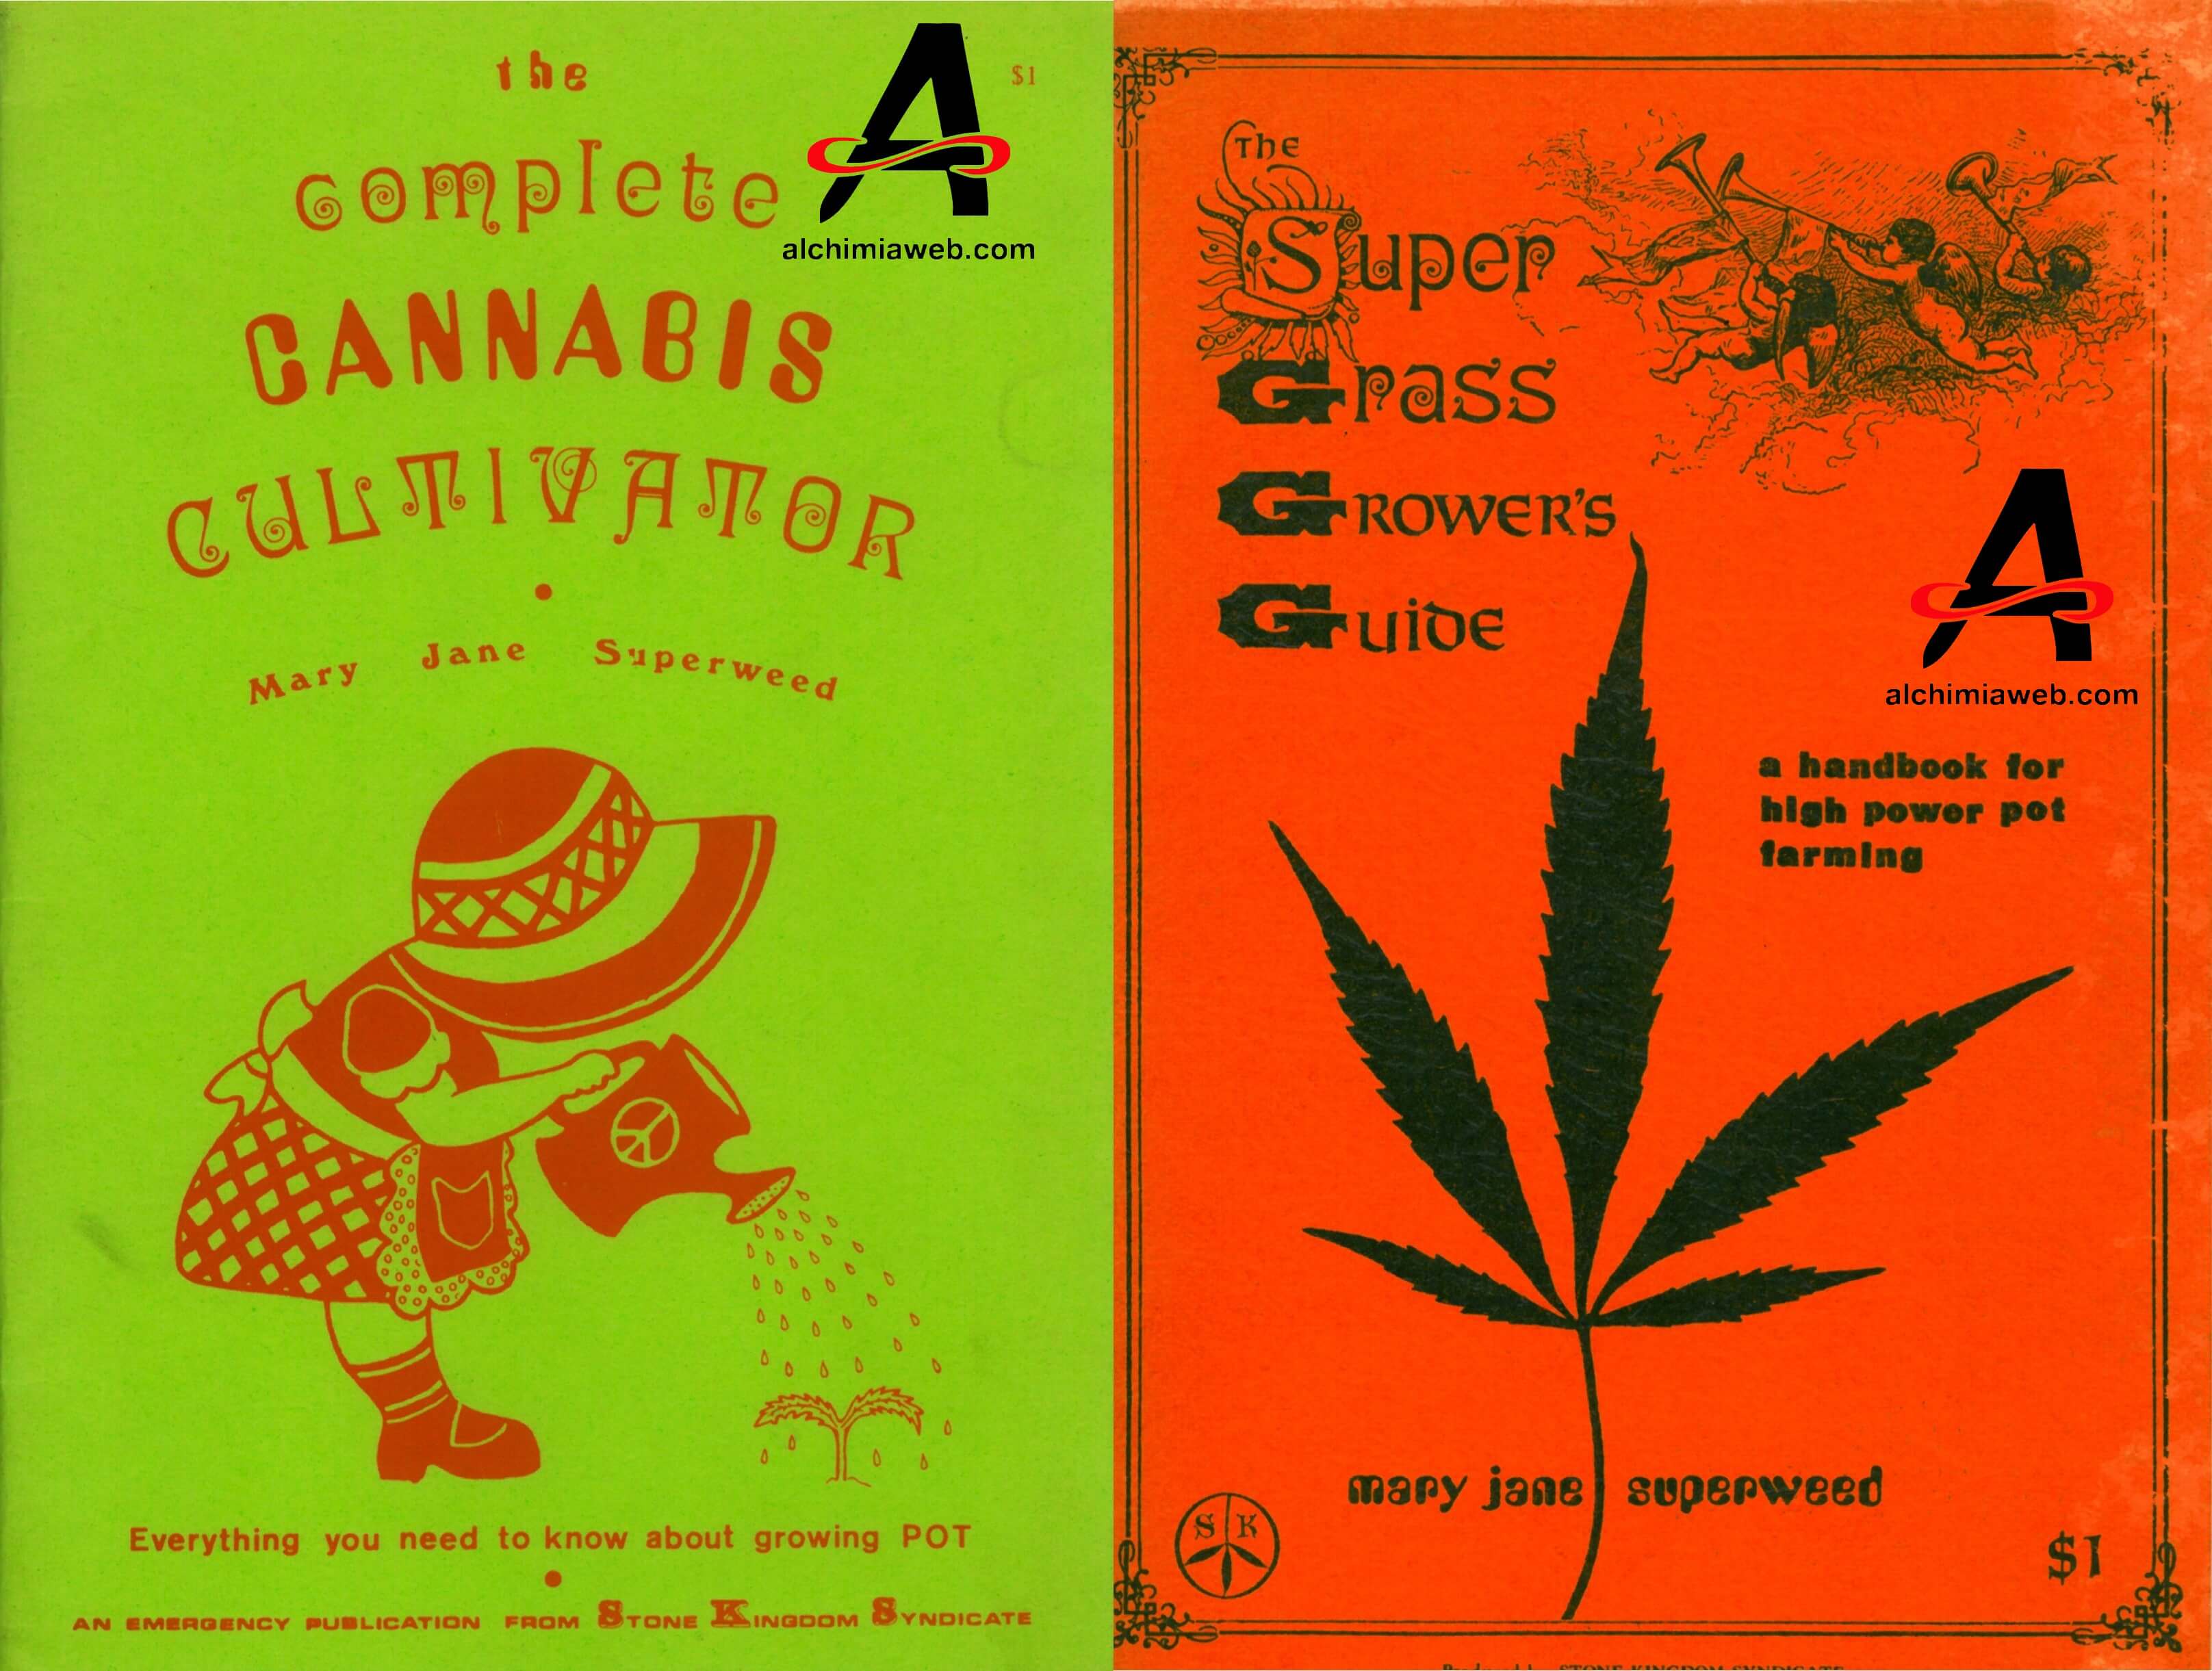 Culture de graines de cannabis régulières en intérieur- Alchimia Grow Shop